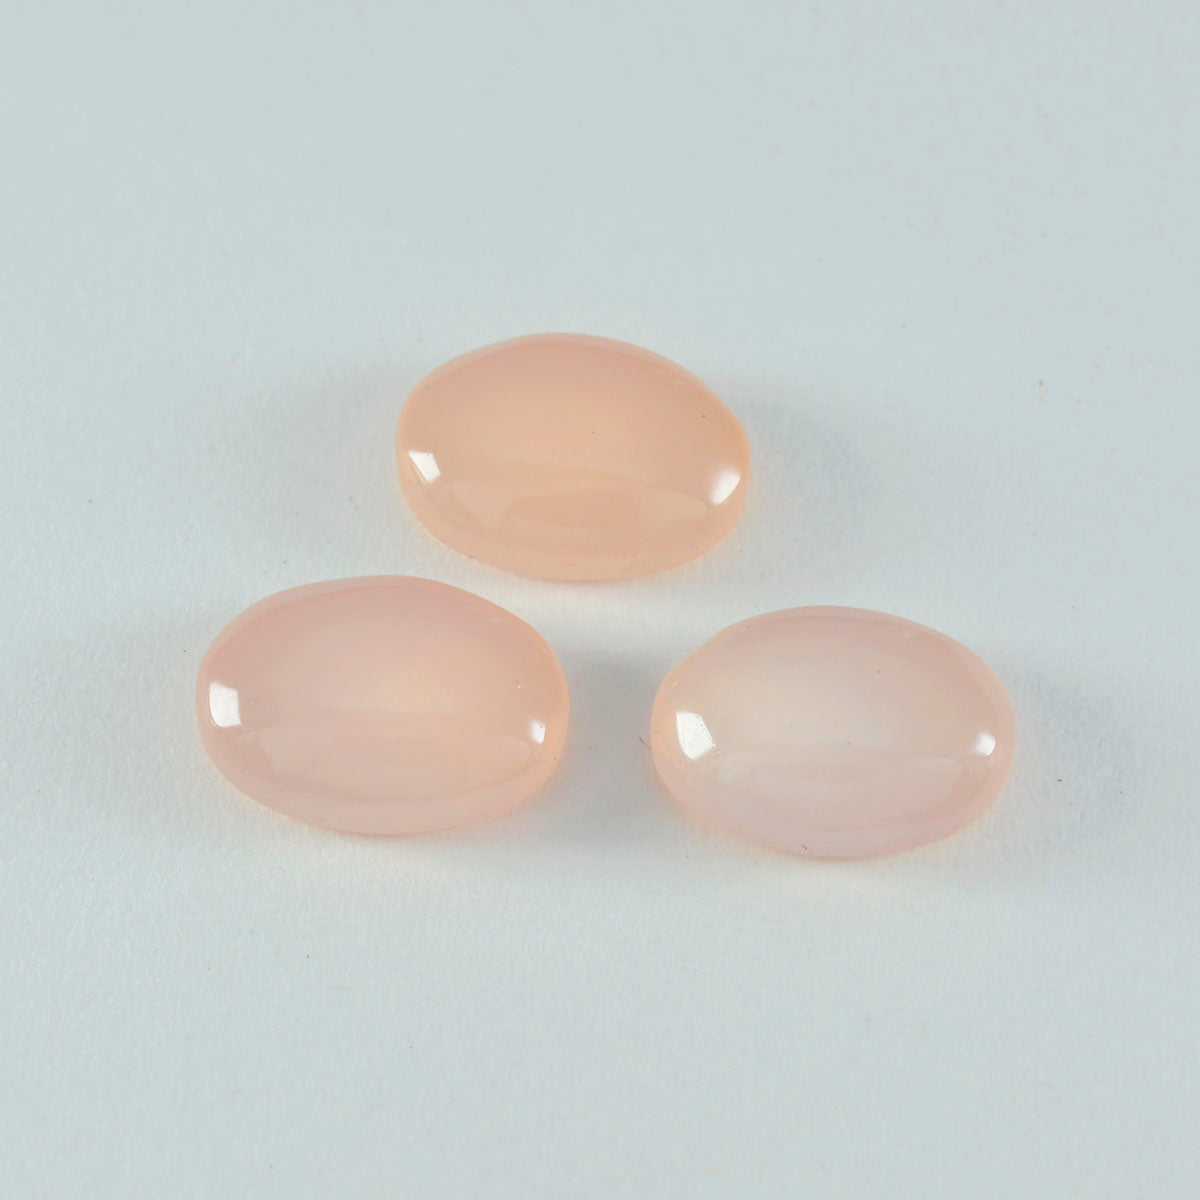 riyogems 1 pezzo di cabochon di quarzo rosa rosa da 10x12 mm di forma ovale, gemma di qualità sorprendente